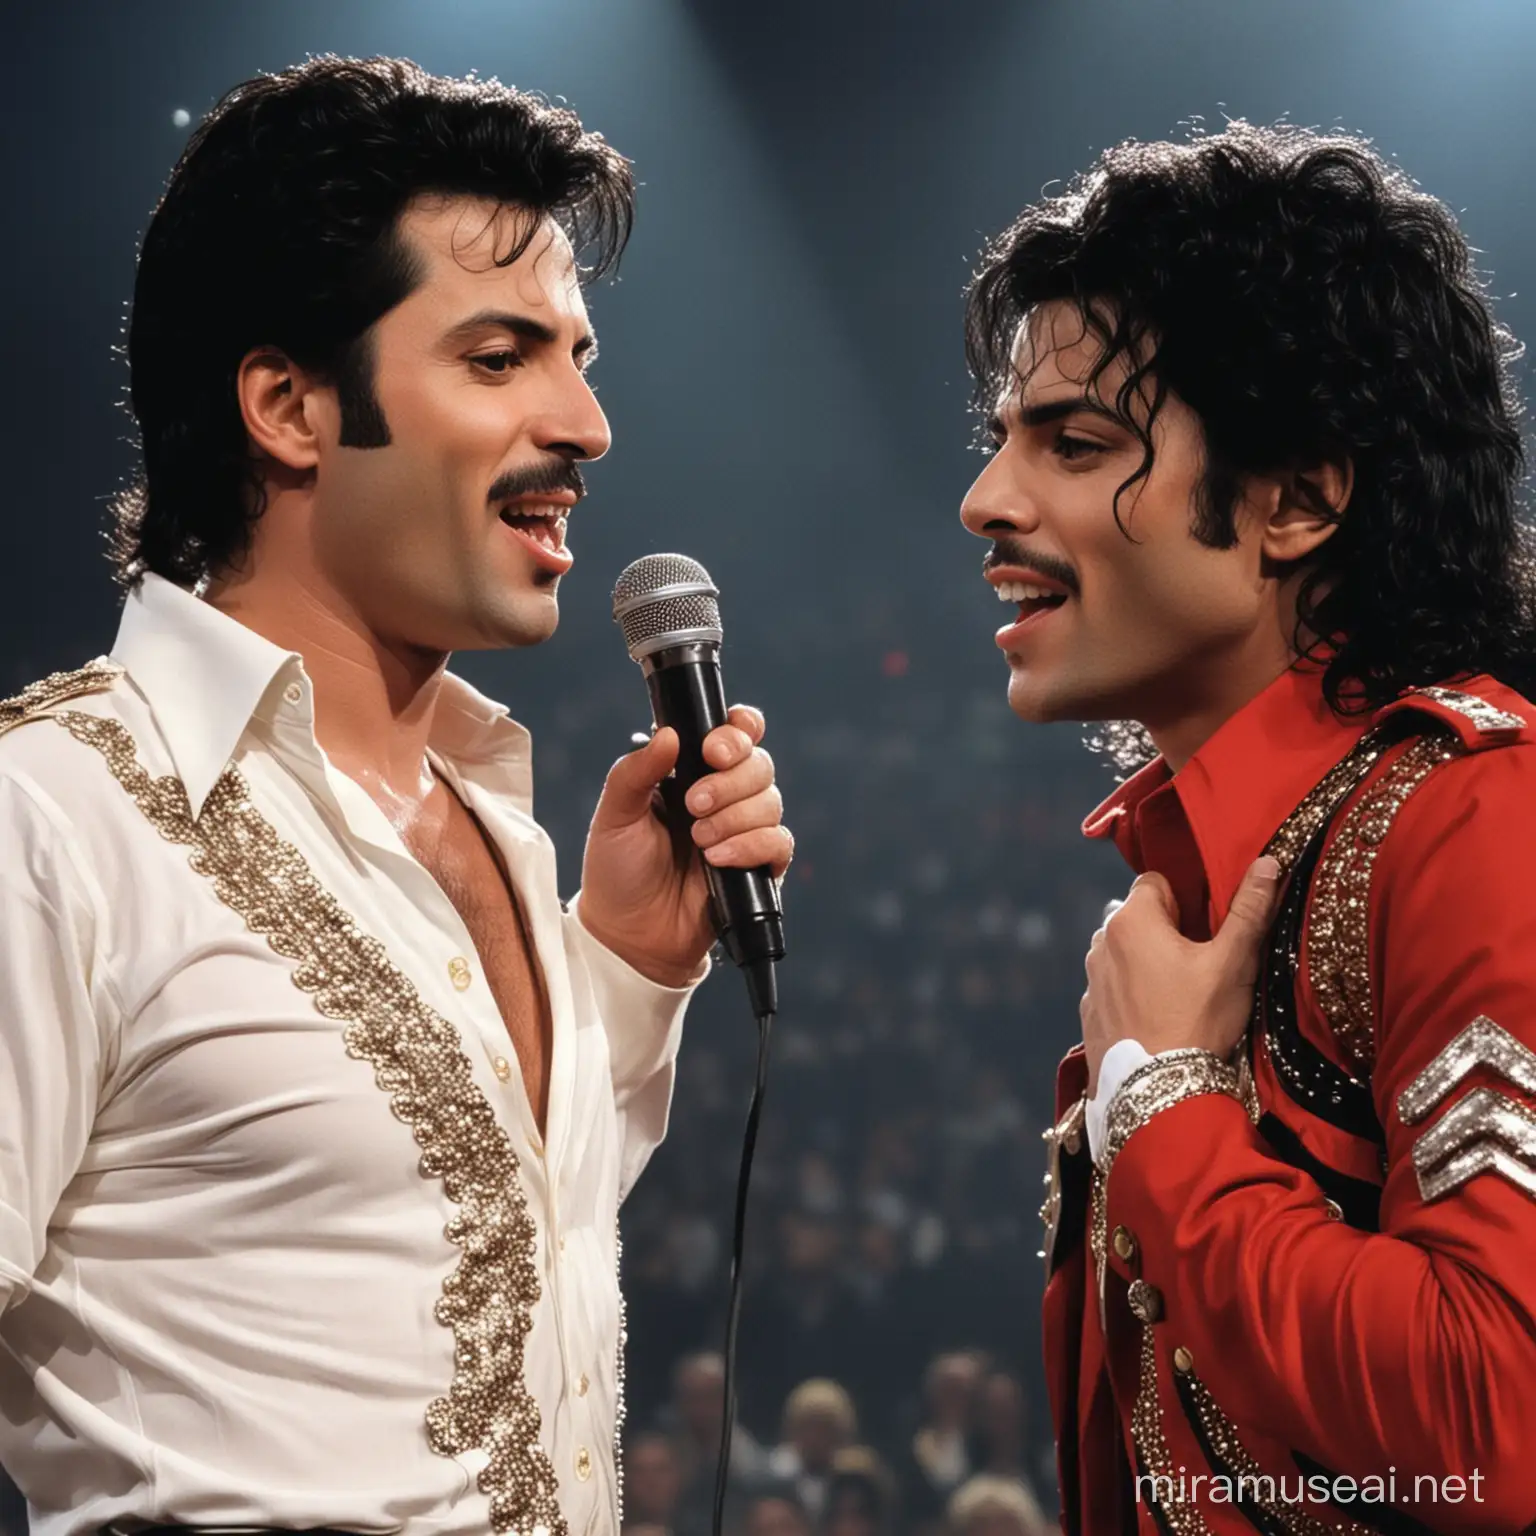 Freddy Mercury y Michael Jackson cantando una canción en un concierto